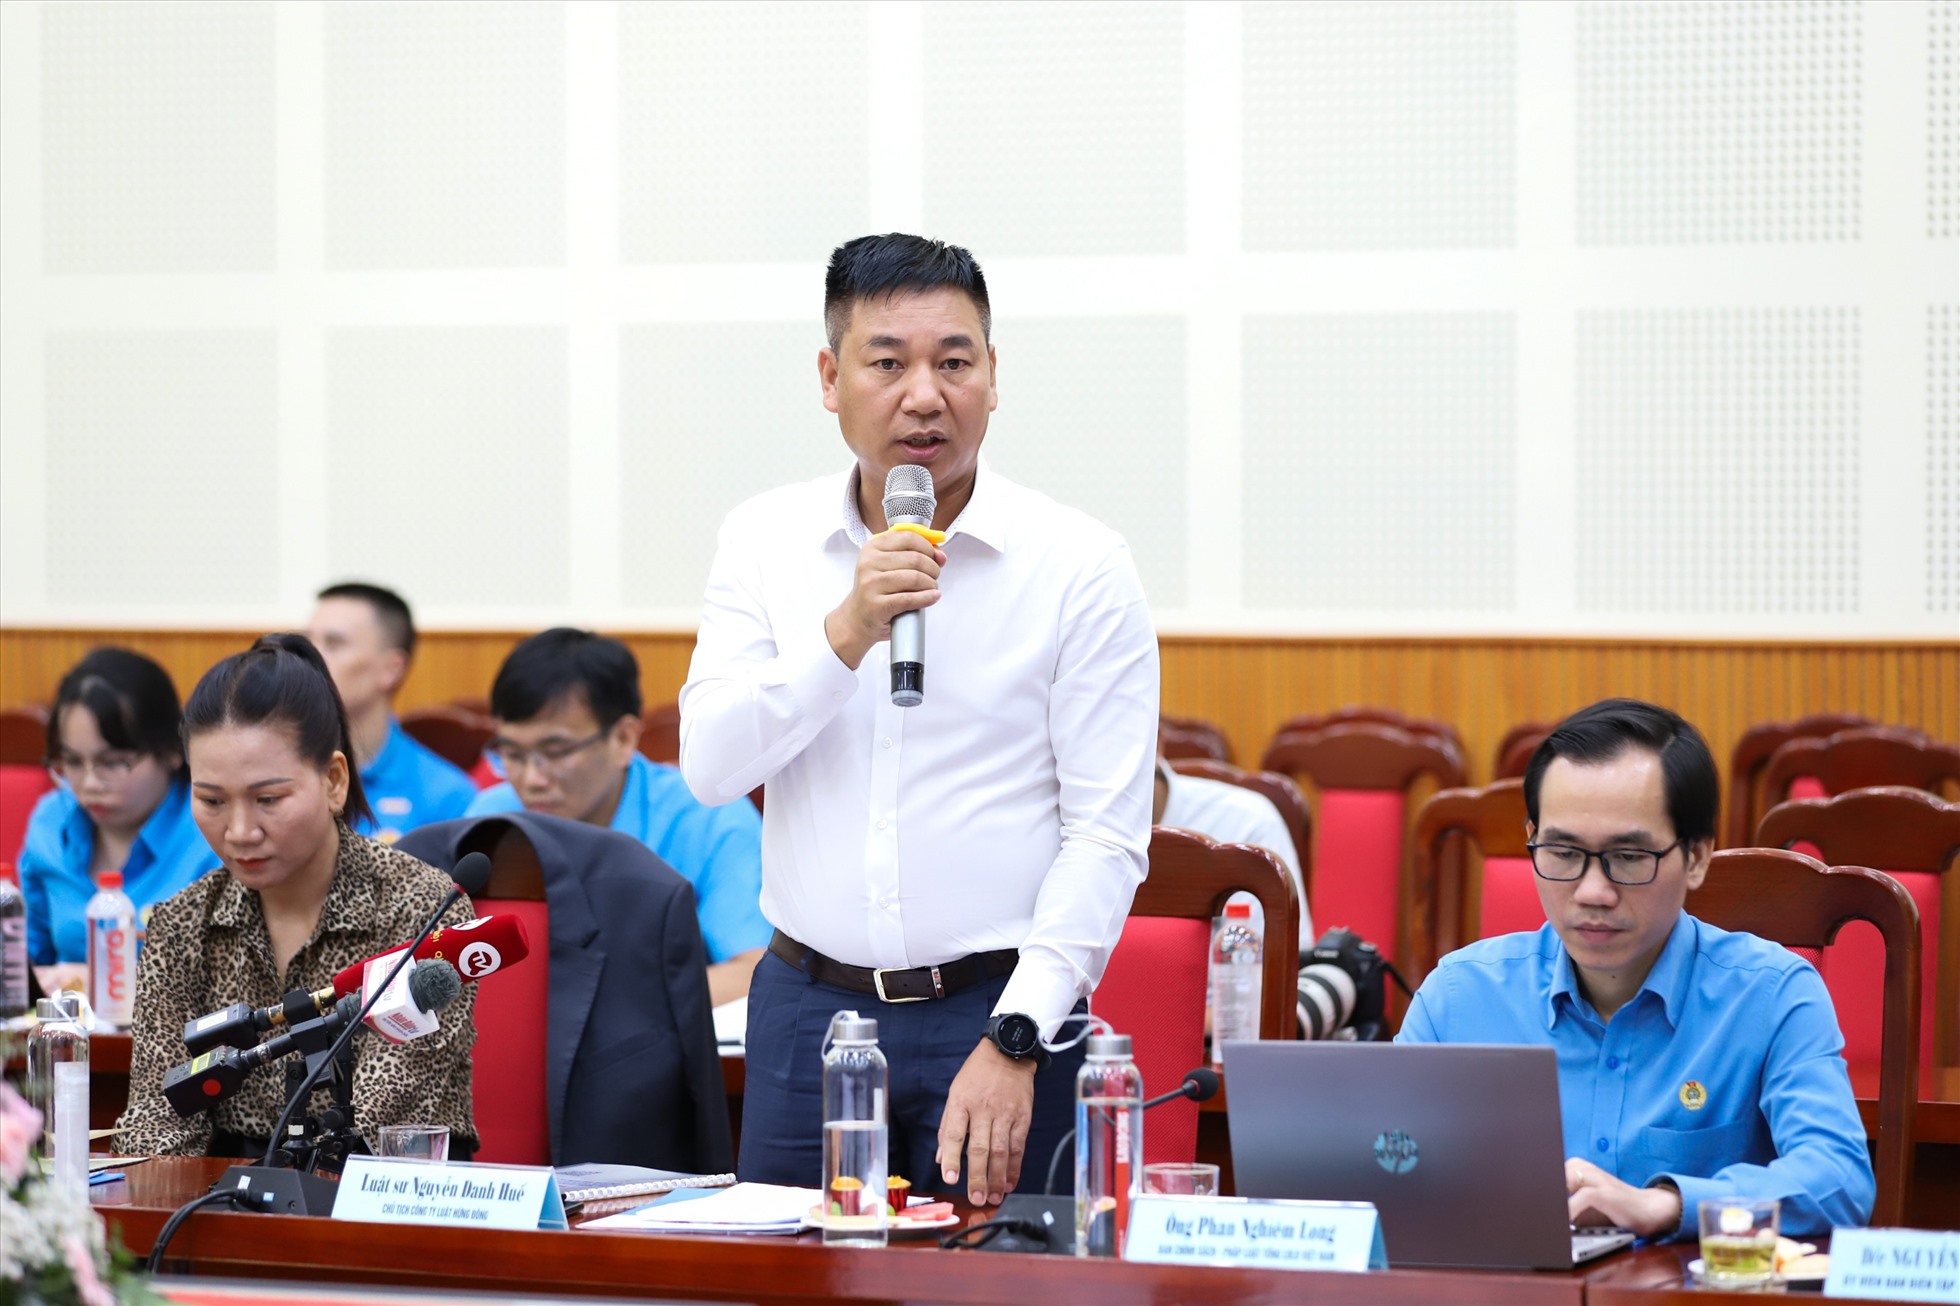 Luật sư Nguyễn Danh Huế trình bày tham luận tại Hội thảo. Ảnh: Tô Thế